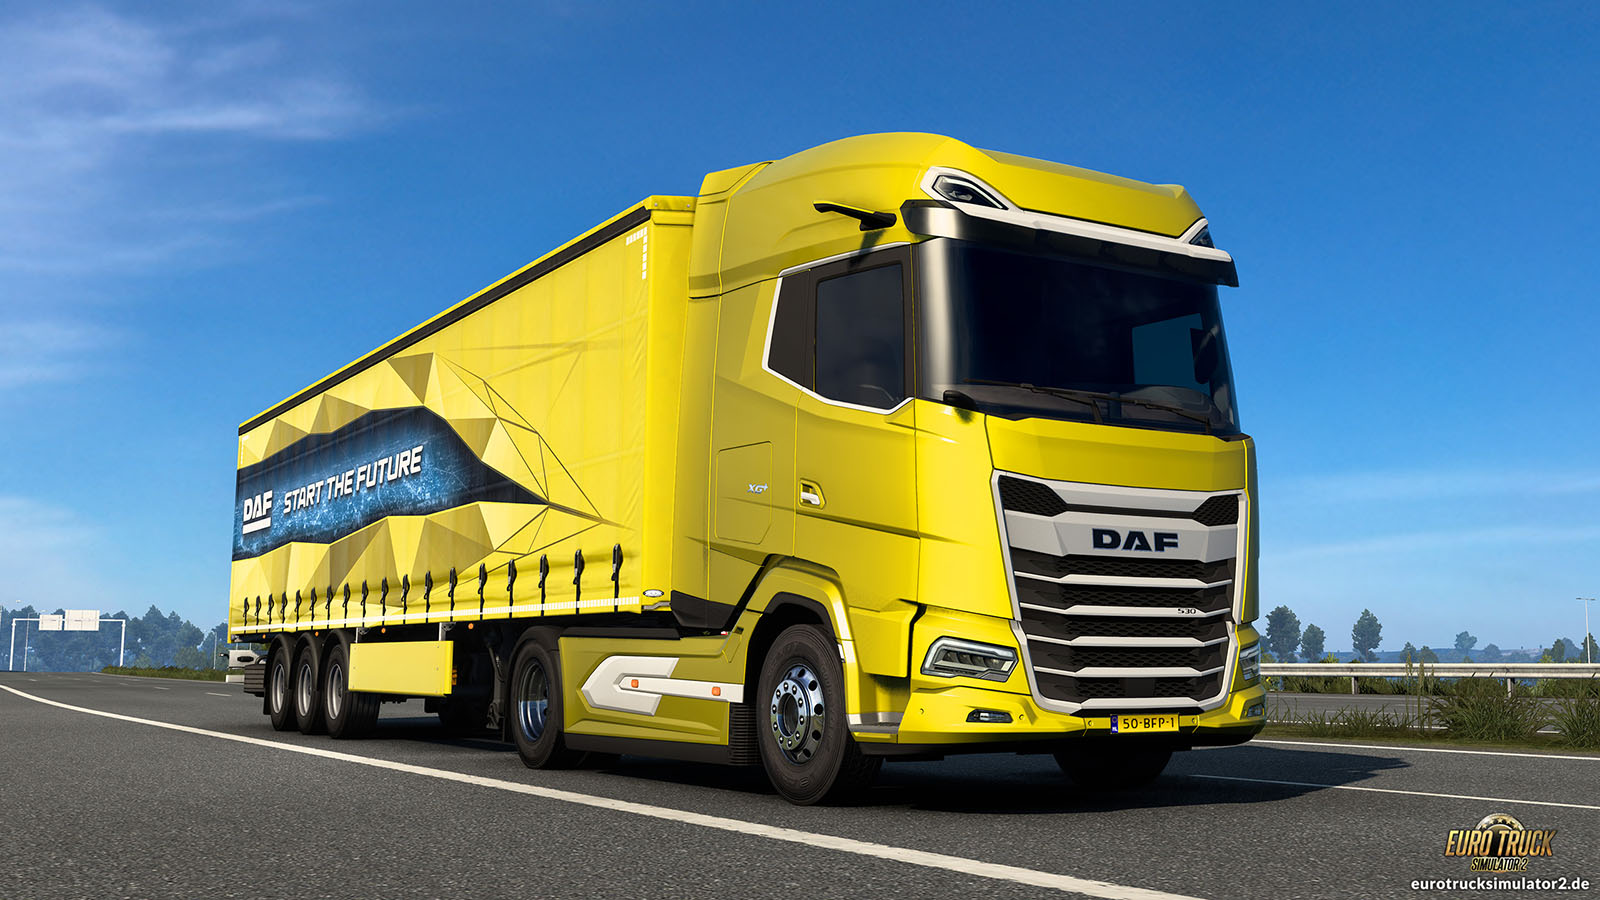 Euro Truck Simulator 2: Neue Tuningteile für viele Trucks